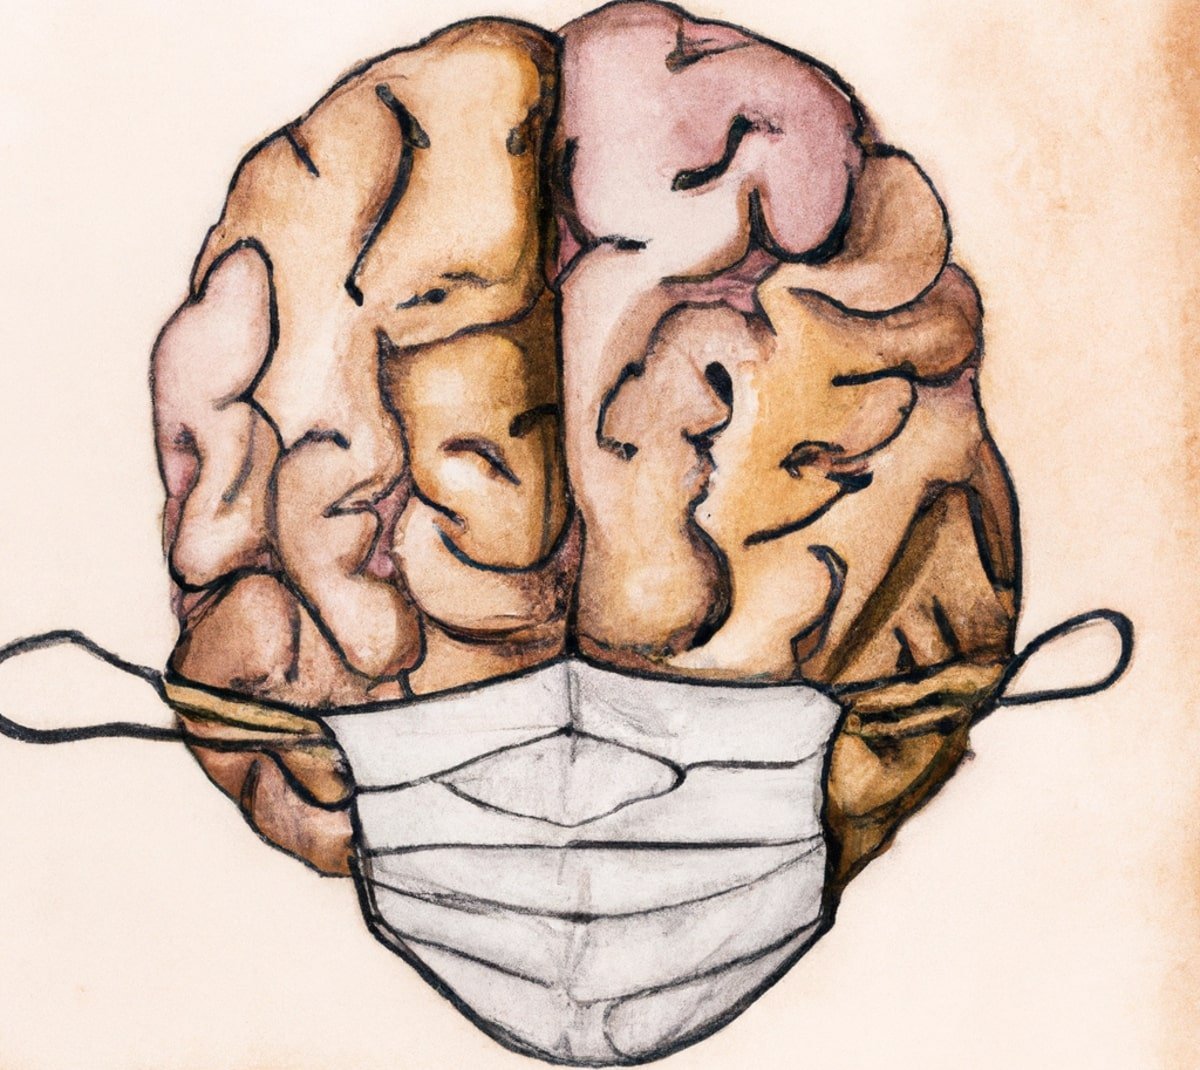 التأثيرات طويلة الأمد لـ Covid: يمكن أن تستمر التغييرات في وظائف المخ لأشهر